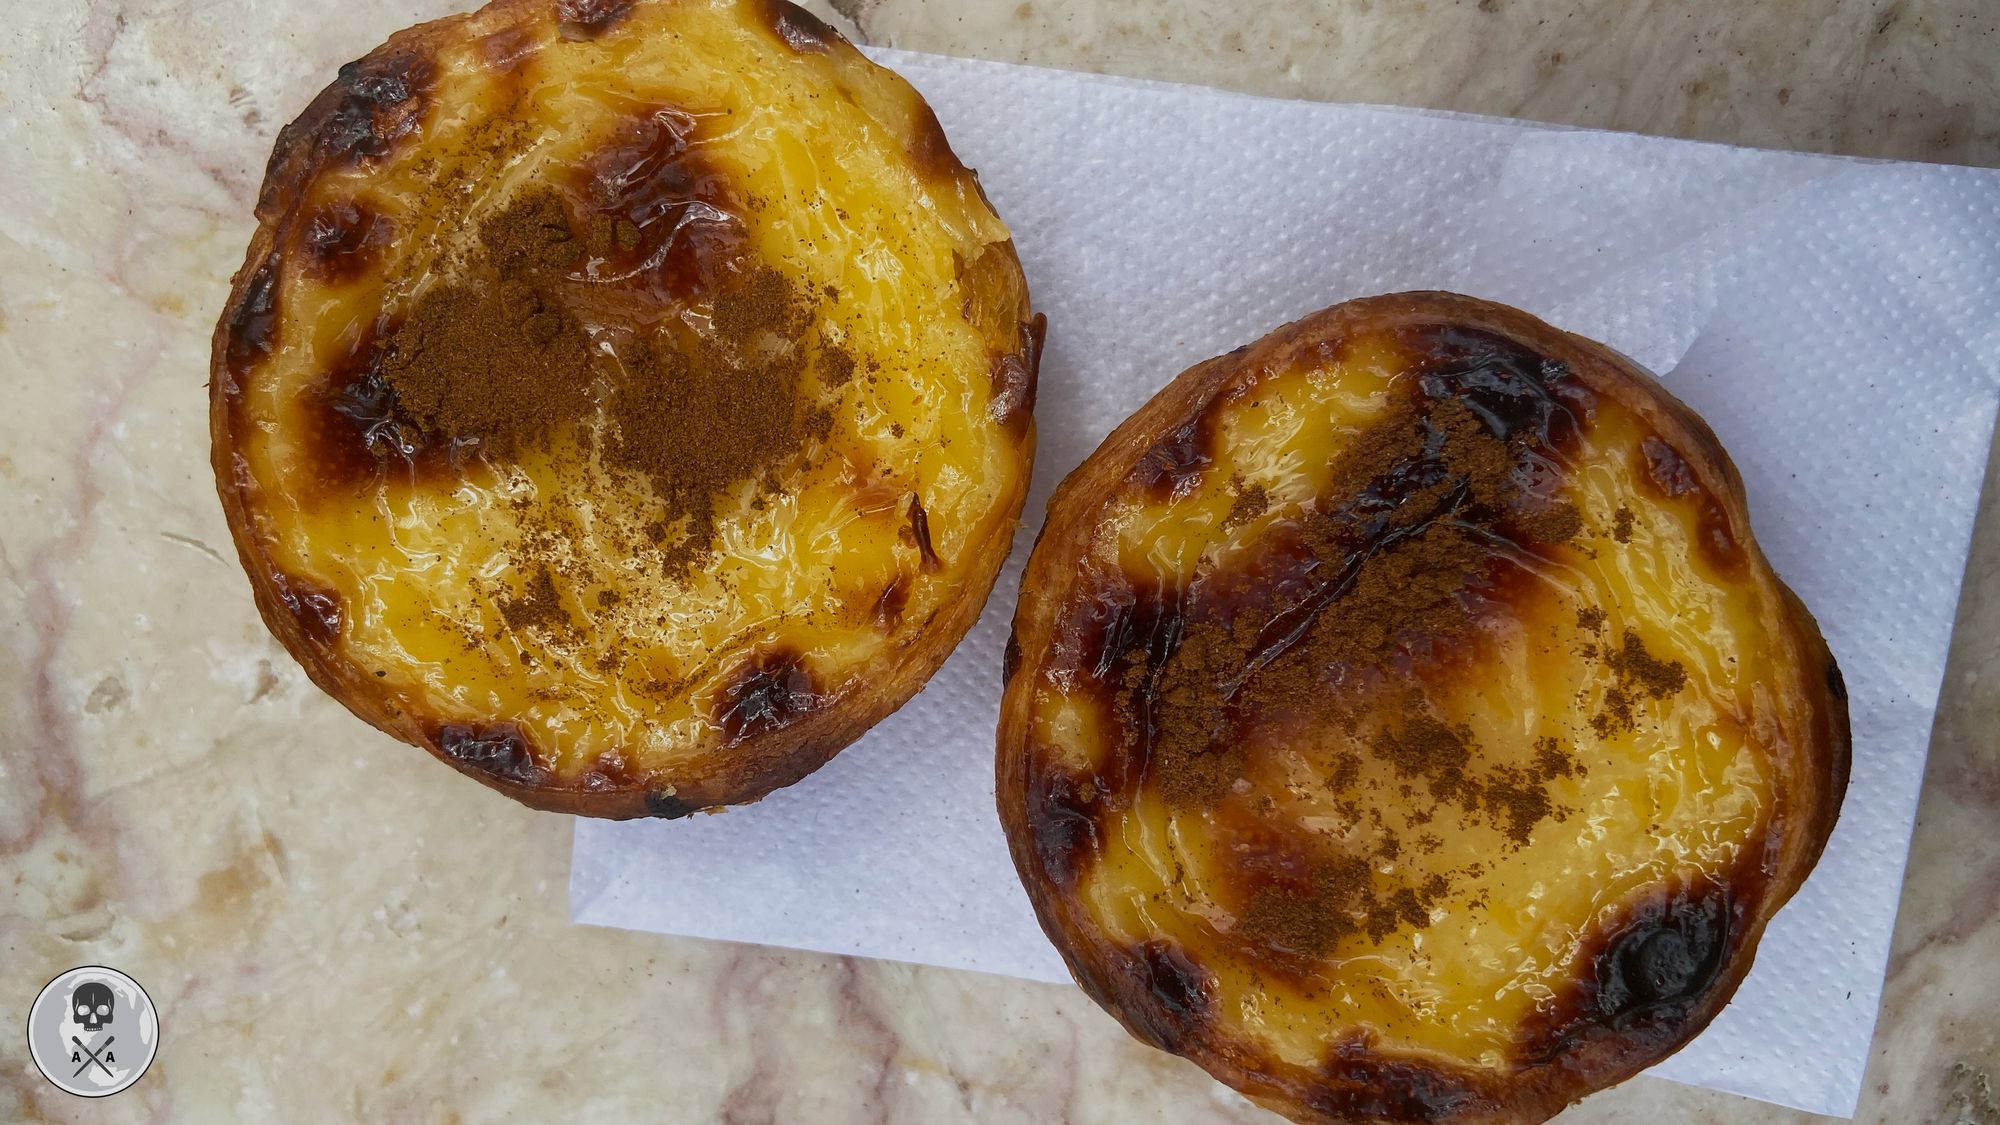 Bifana Recipe- A Delicious Portuguese Sandwich In 1 Hour